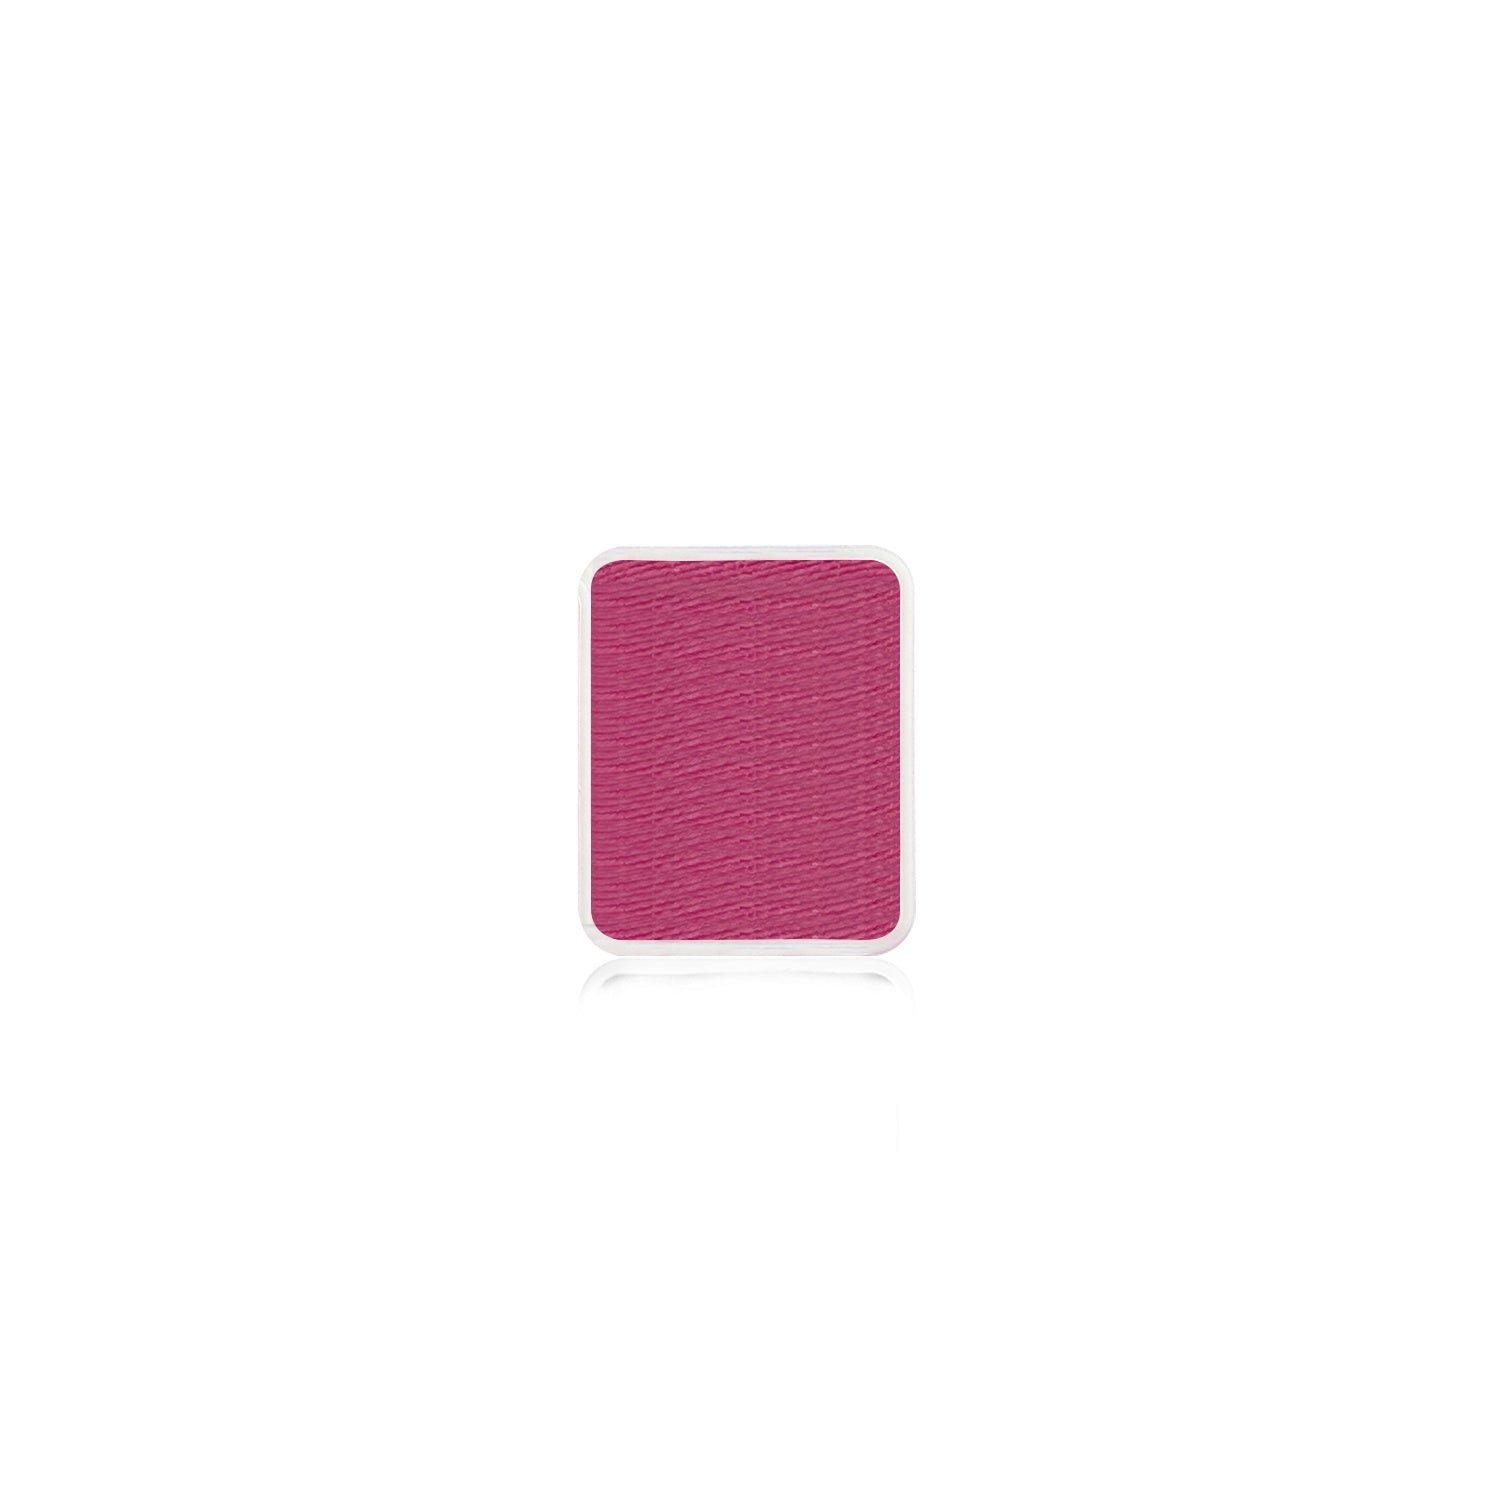 Kraze FX Face Paint Palette Refill - Coral Pink (0.21 oz/6 gm)